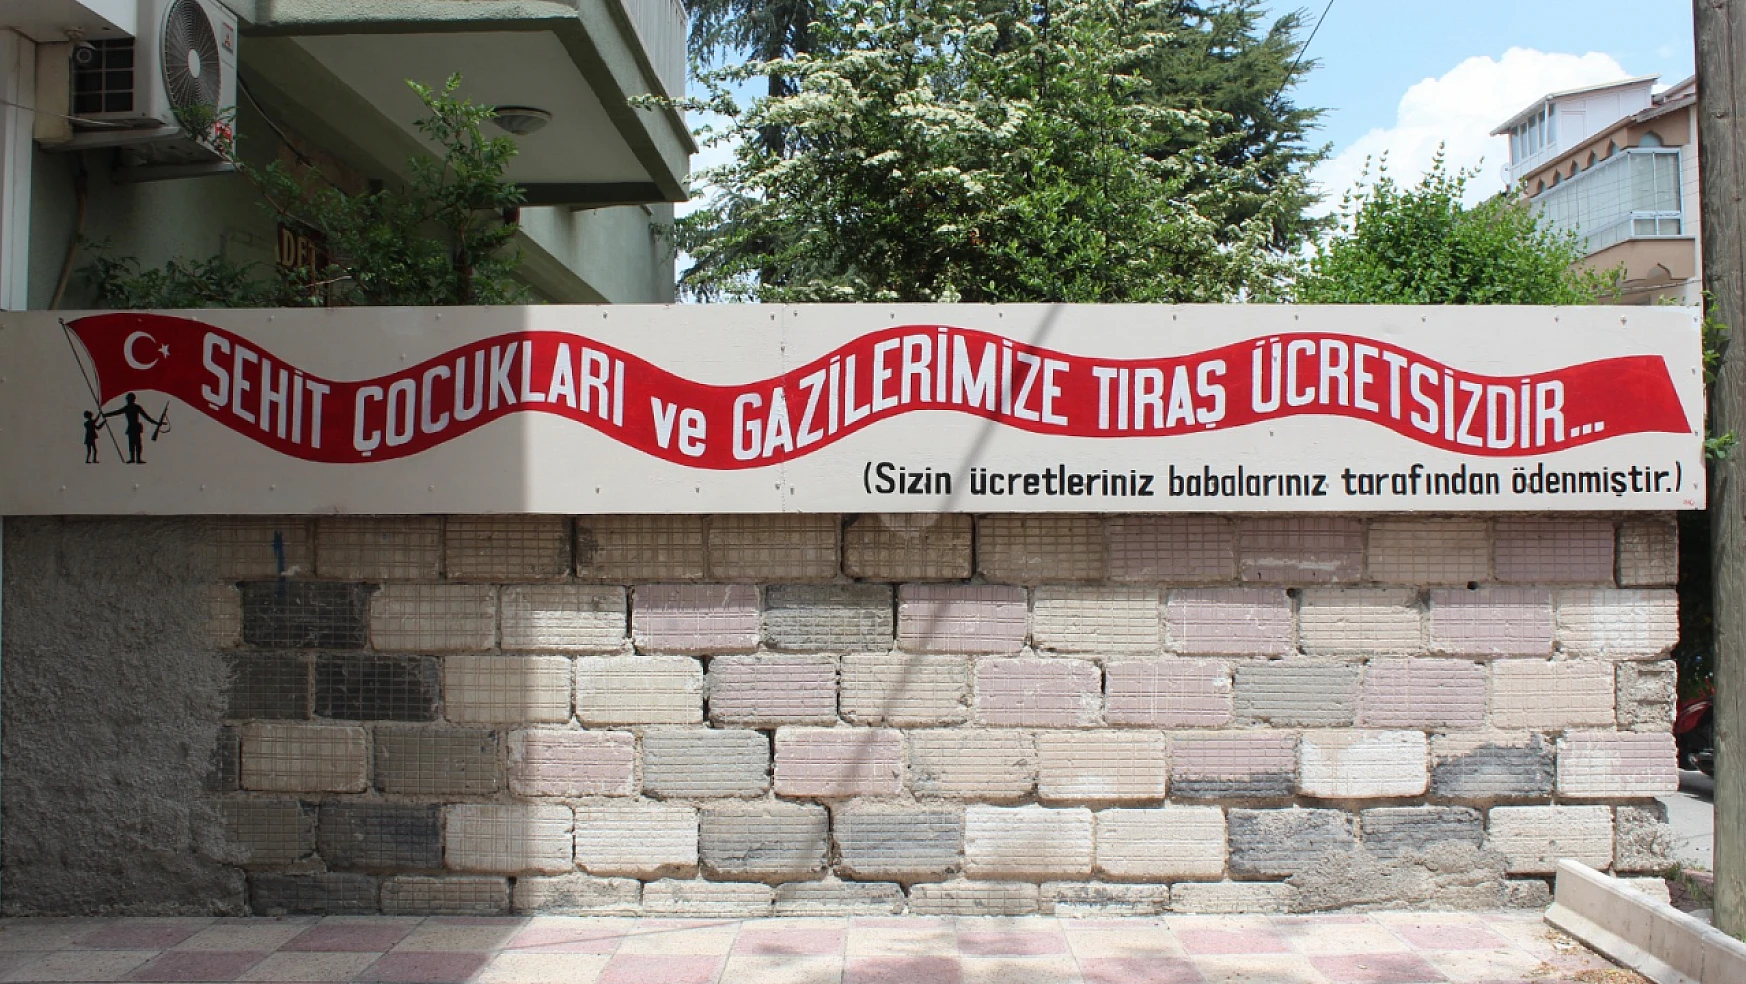 Konya'da bu kuaför şehit çocuklarına ve gazilere ücretsiz hizmet veriyor